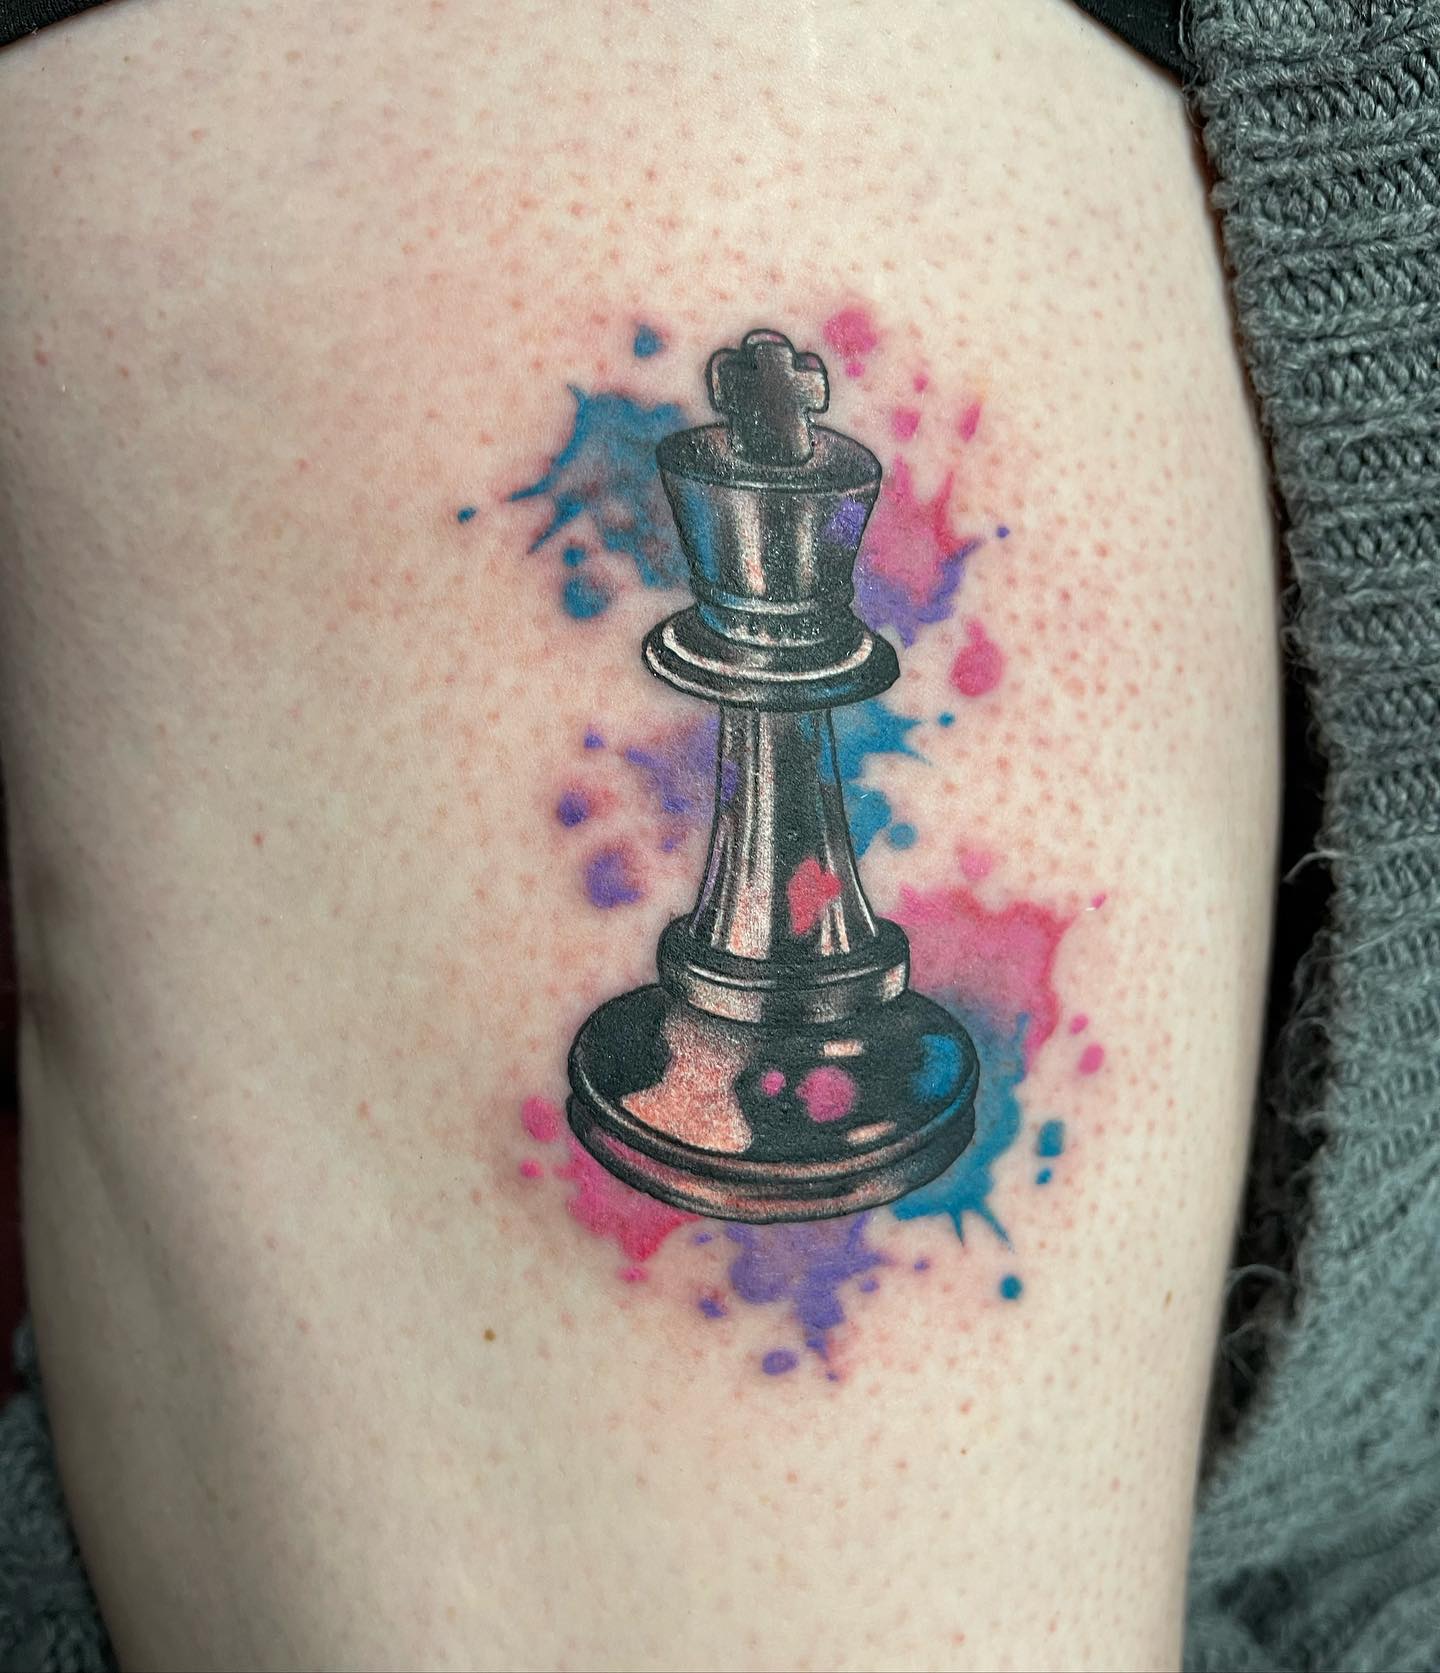 Tatuaje de ajedrez vibrante y colorido